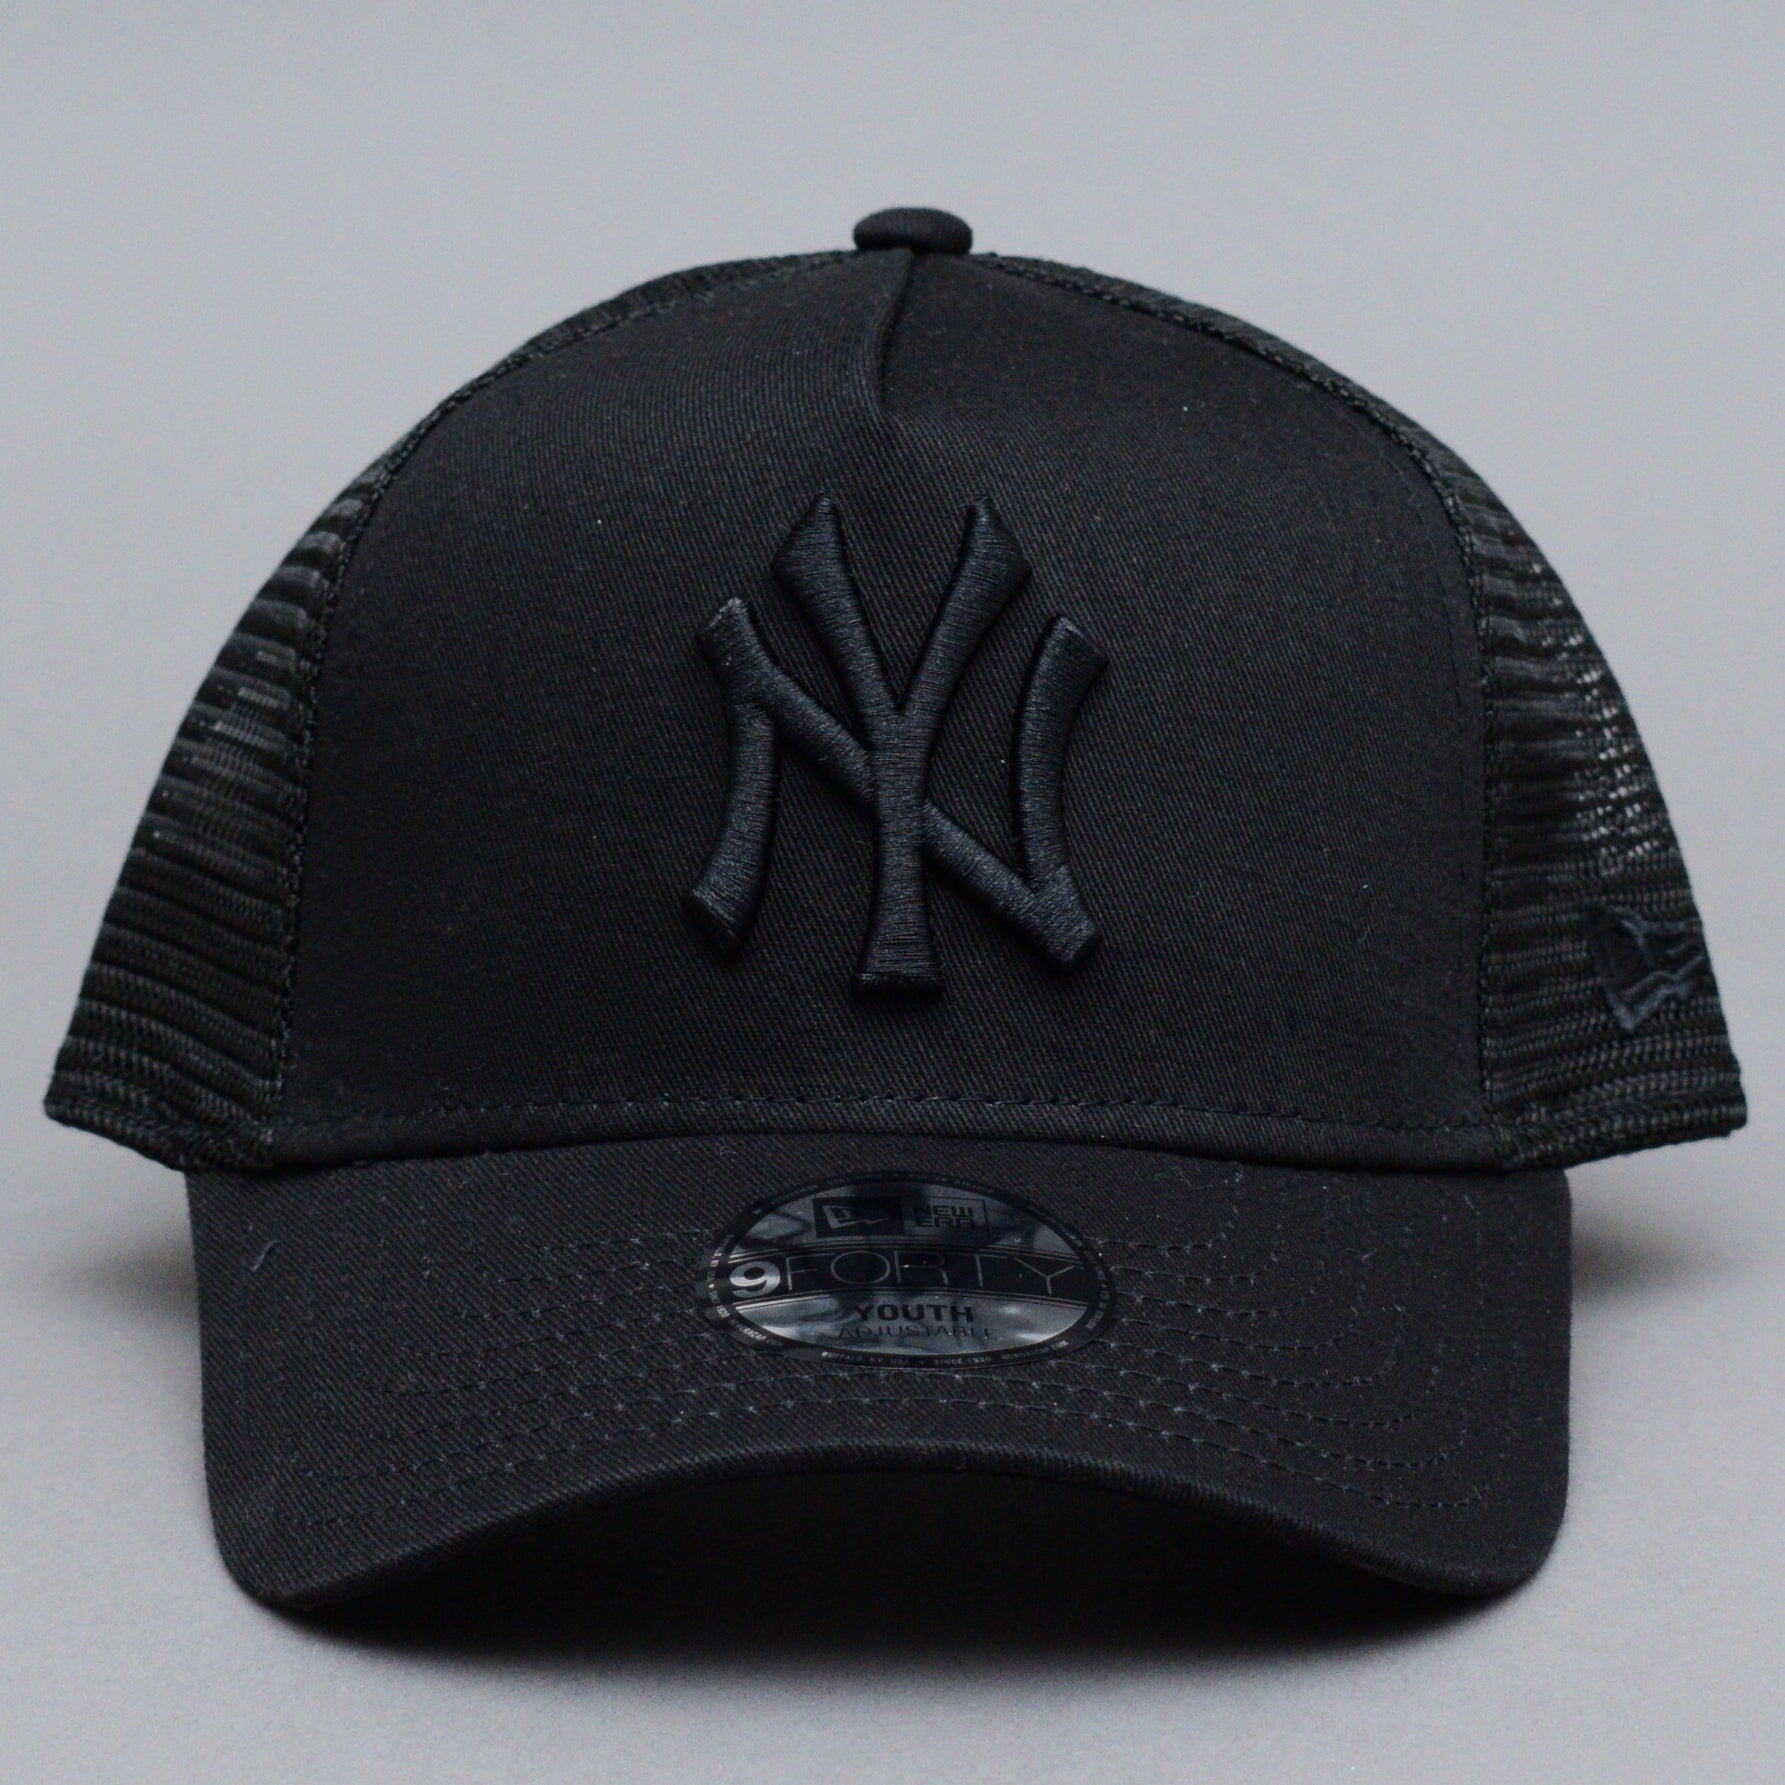 New Era - NY Yankees A Frame Youth - Trucker/Snapback - Black/Black